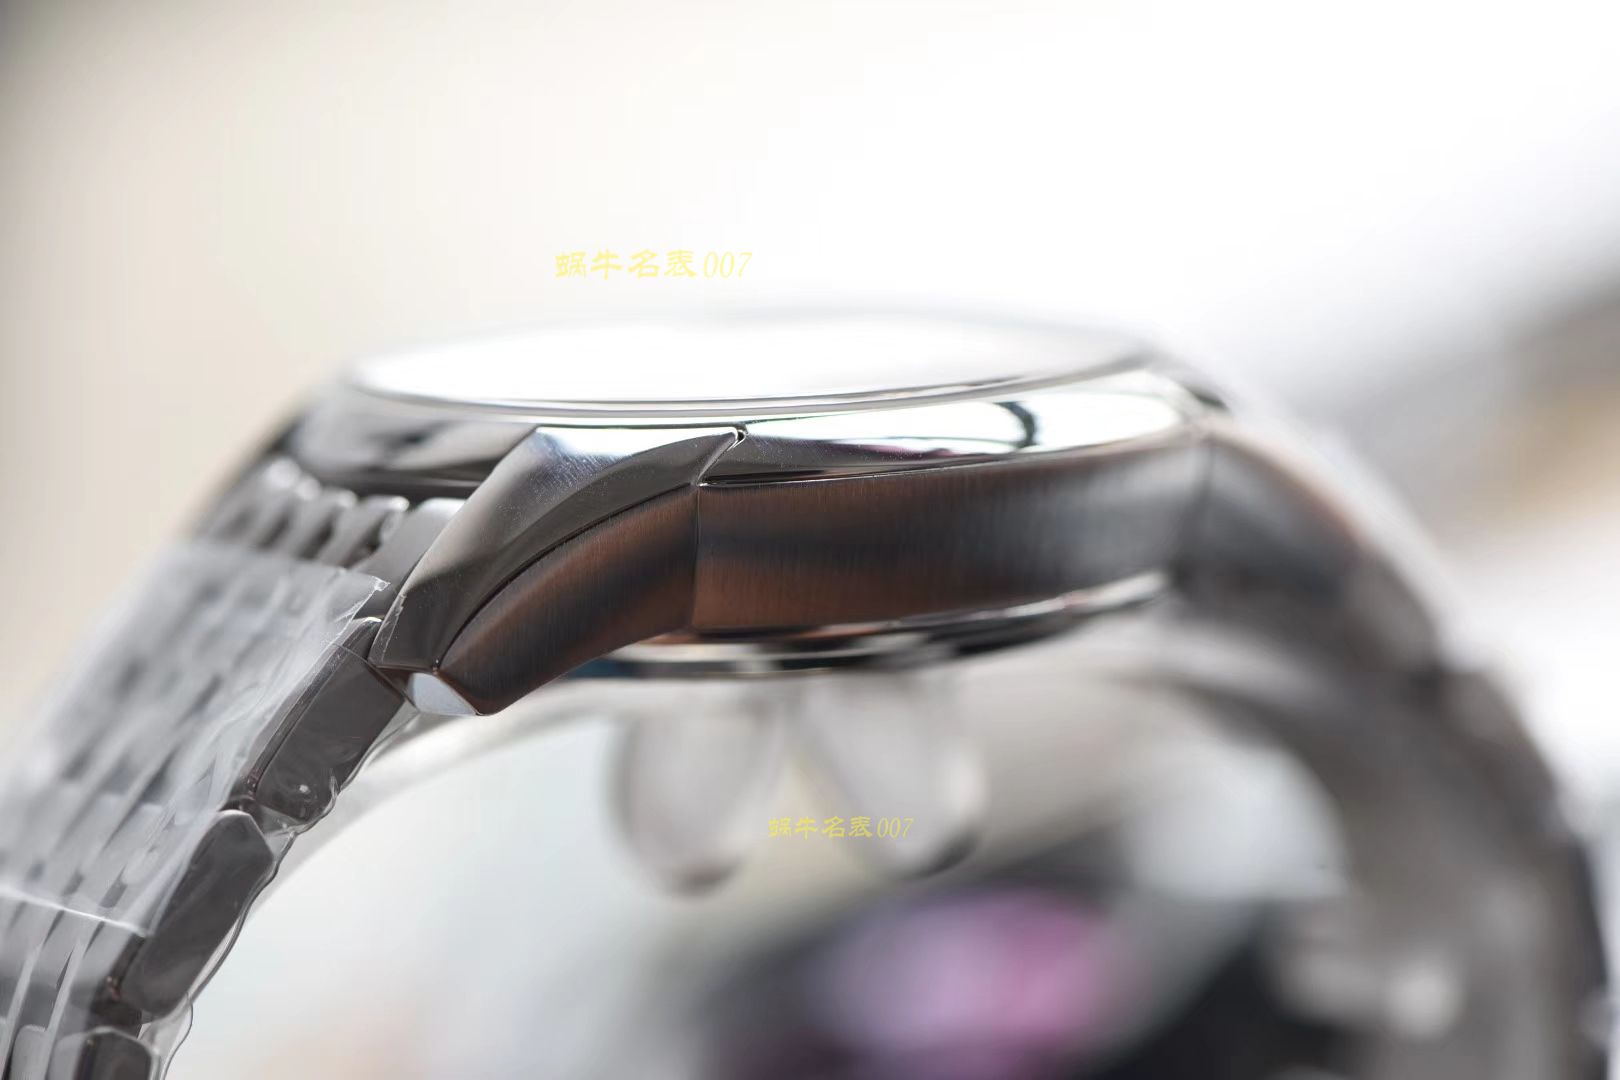 欧米茄碟飞系列431.10.41.21.01.001腕表一比一高仿手表【VS 新品 ：蝶飞经典黑 搭载同轴8500机芯上市！】 / M357